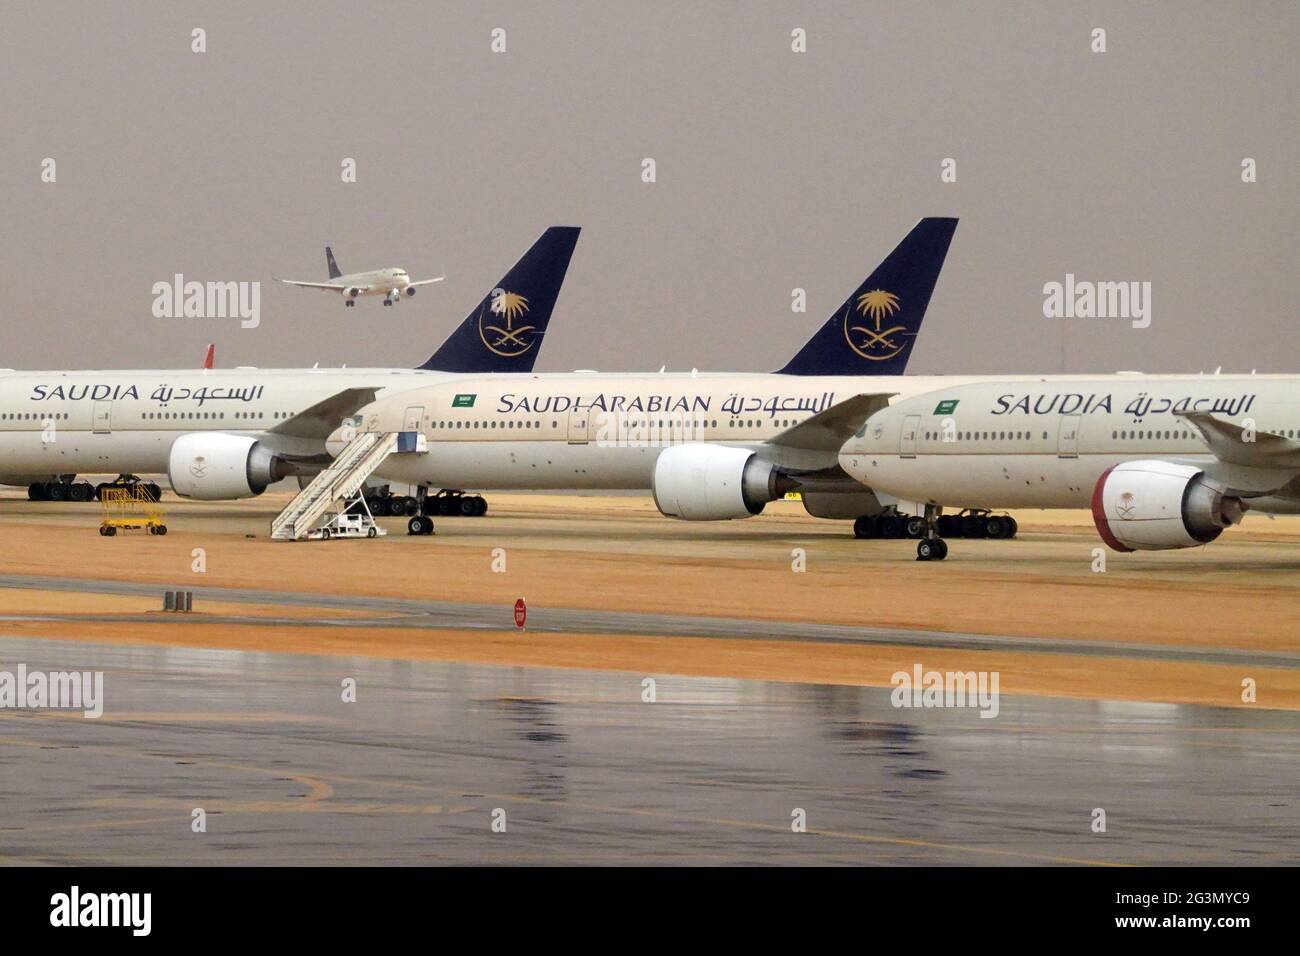 '21.02.2021, Riad, Riad, Saudi-Arabien - Flugzeug der Saudi Arabian Airlines auf dem Vorfeld des King Khalid International Airport. 00S210221D1108CAROEX.J Stockfoto